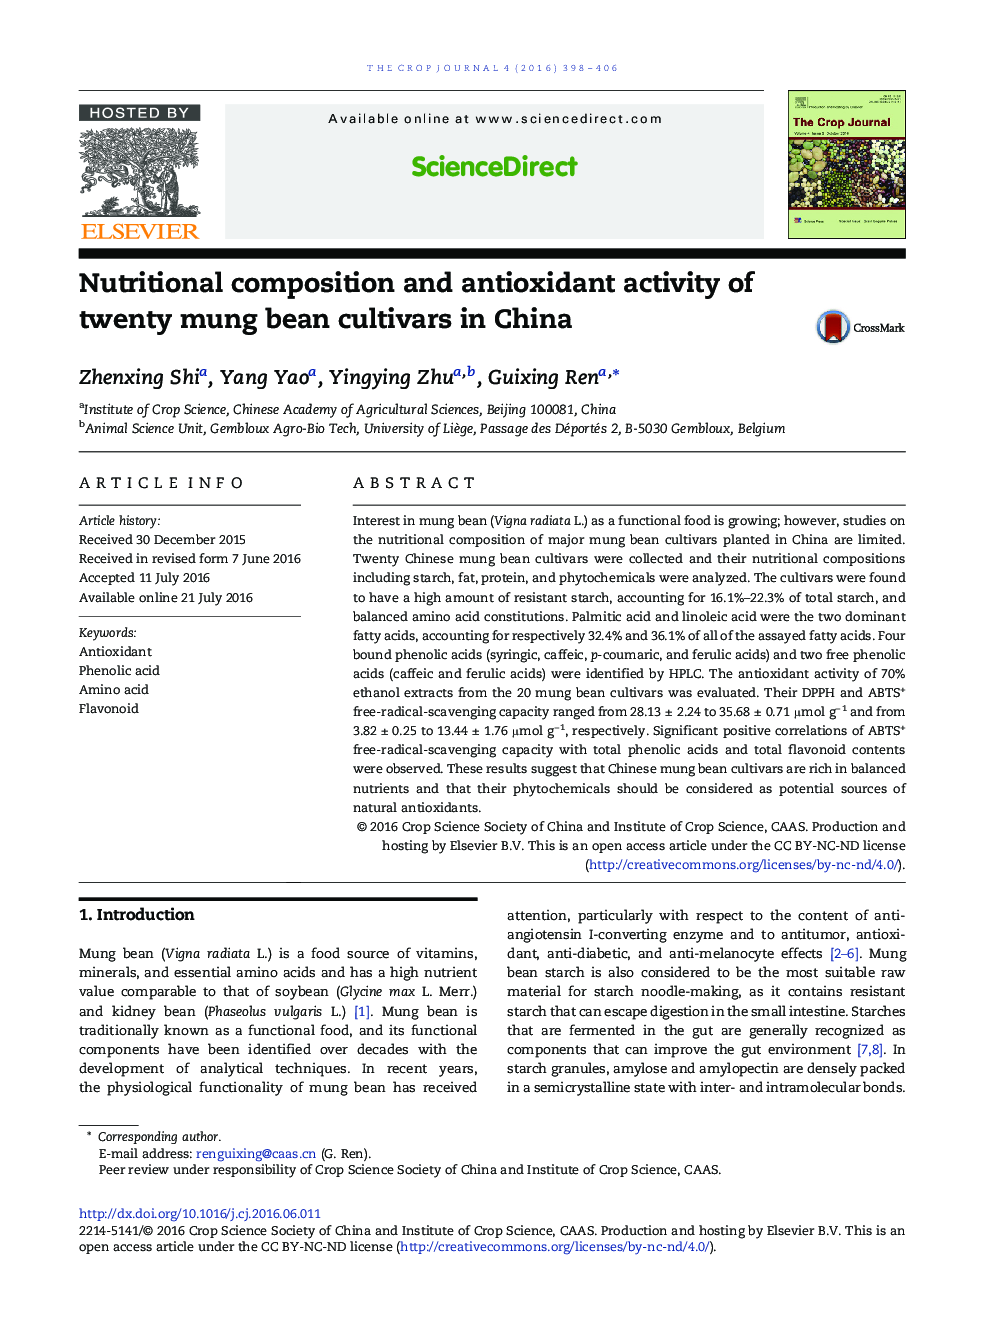 ترکیبات غذایی و فعالیت آنتی اکسیدانی بقای 20 رقم لوبیا در چین 